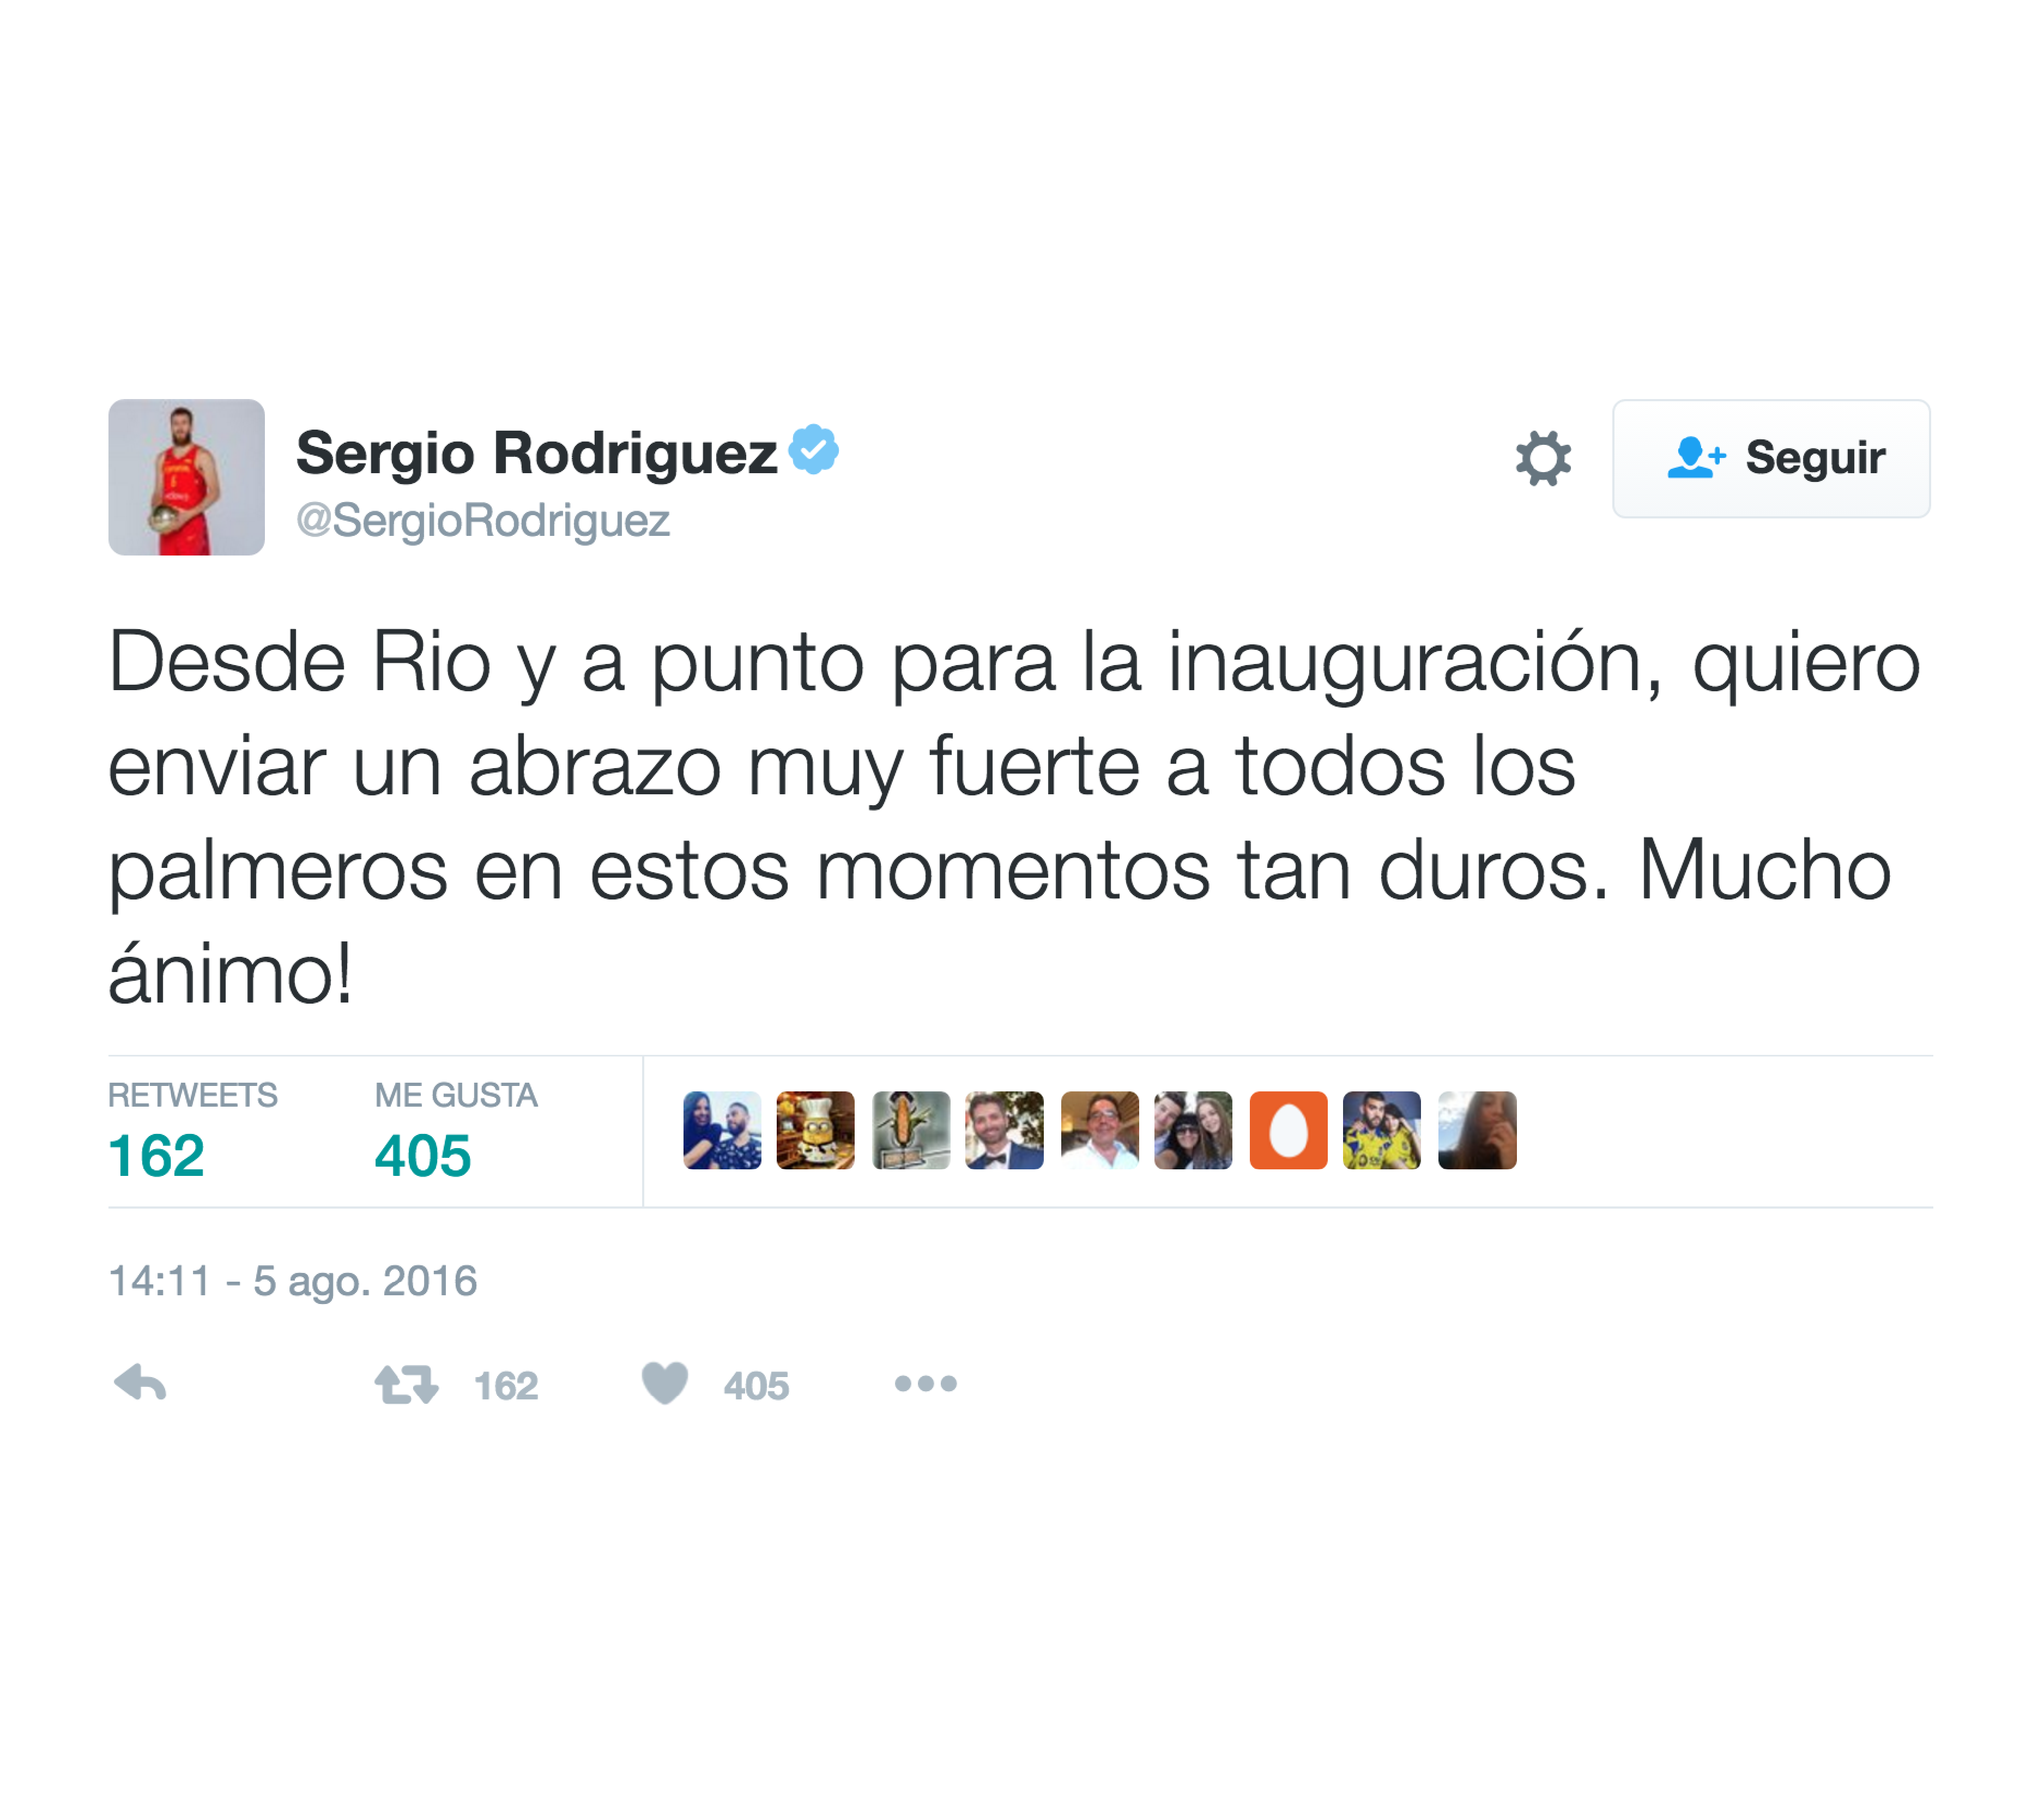 Pantallazo del tuit de Sergio Rodríguez solidarizándose con los afectados por el incendio de La Palma